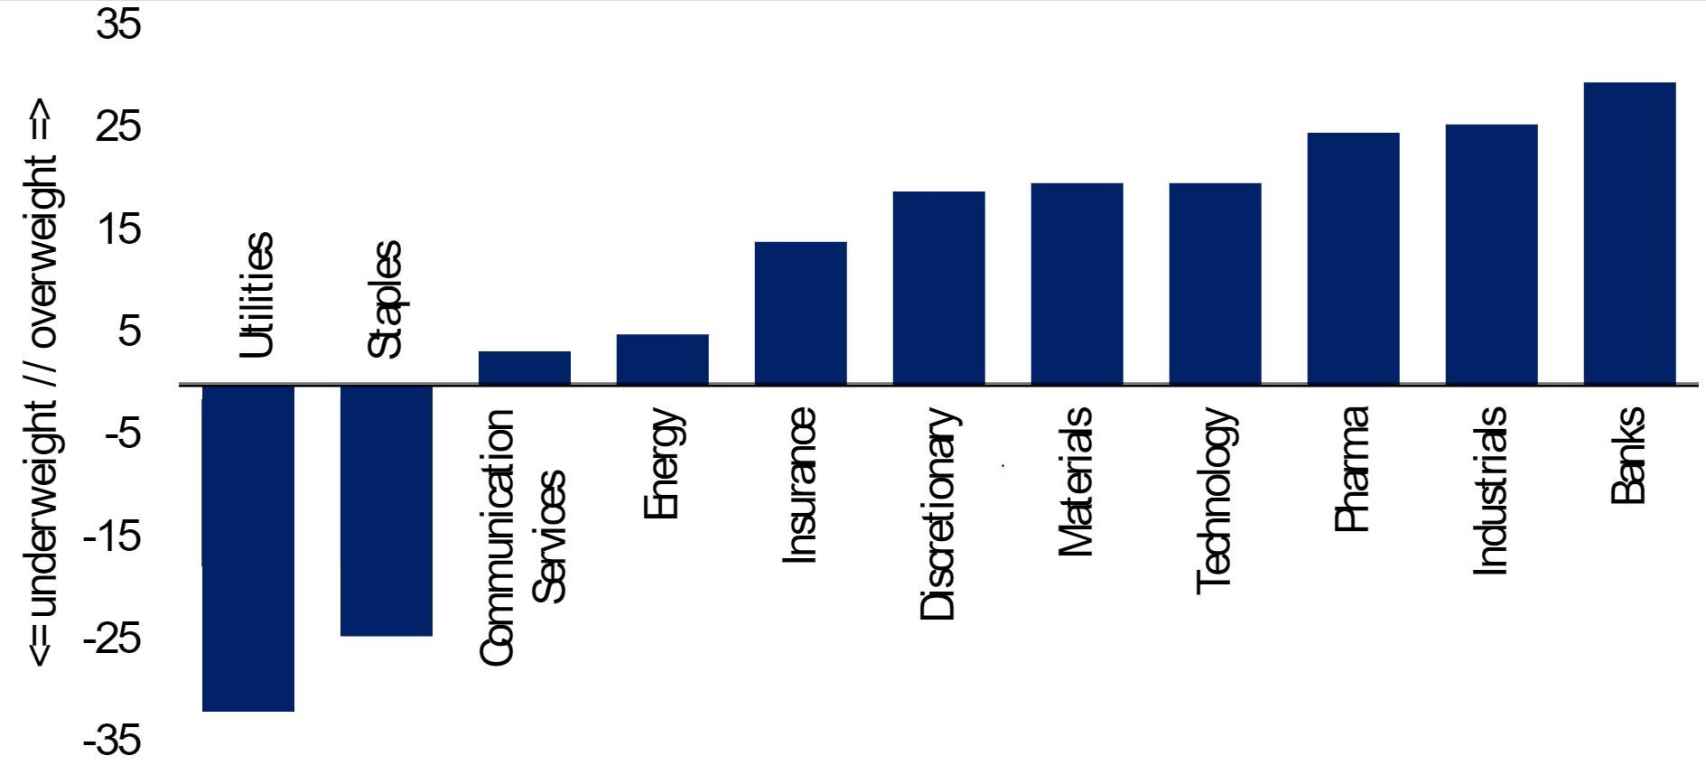 Preferencias de inversión de gestores profesionales por sectores.